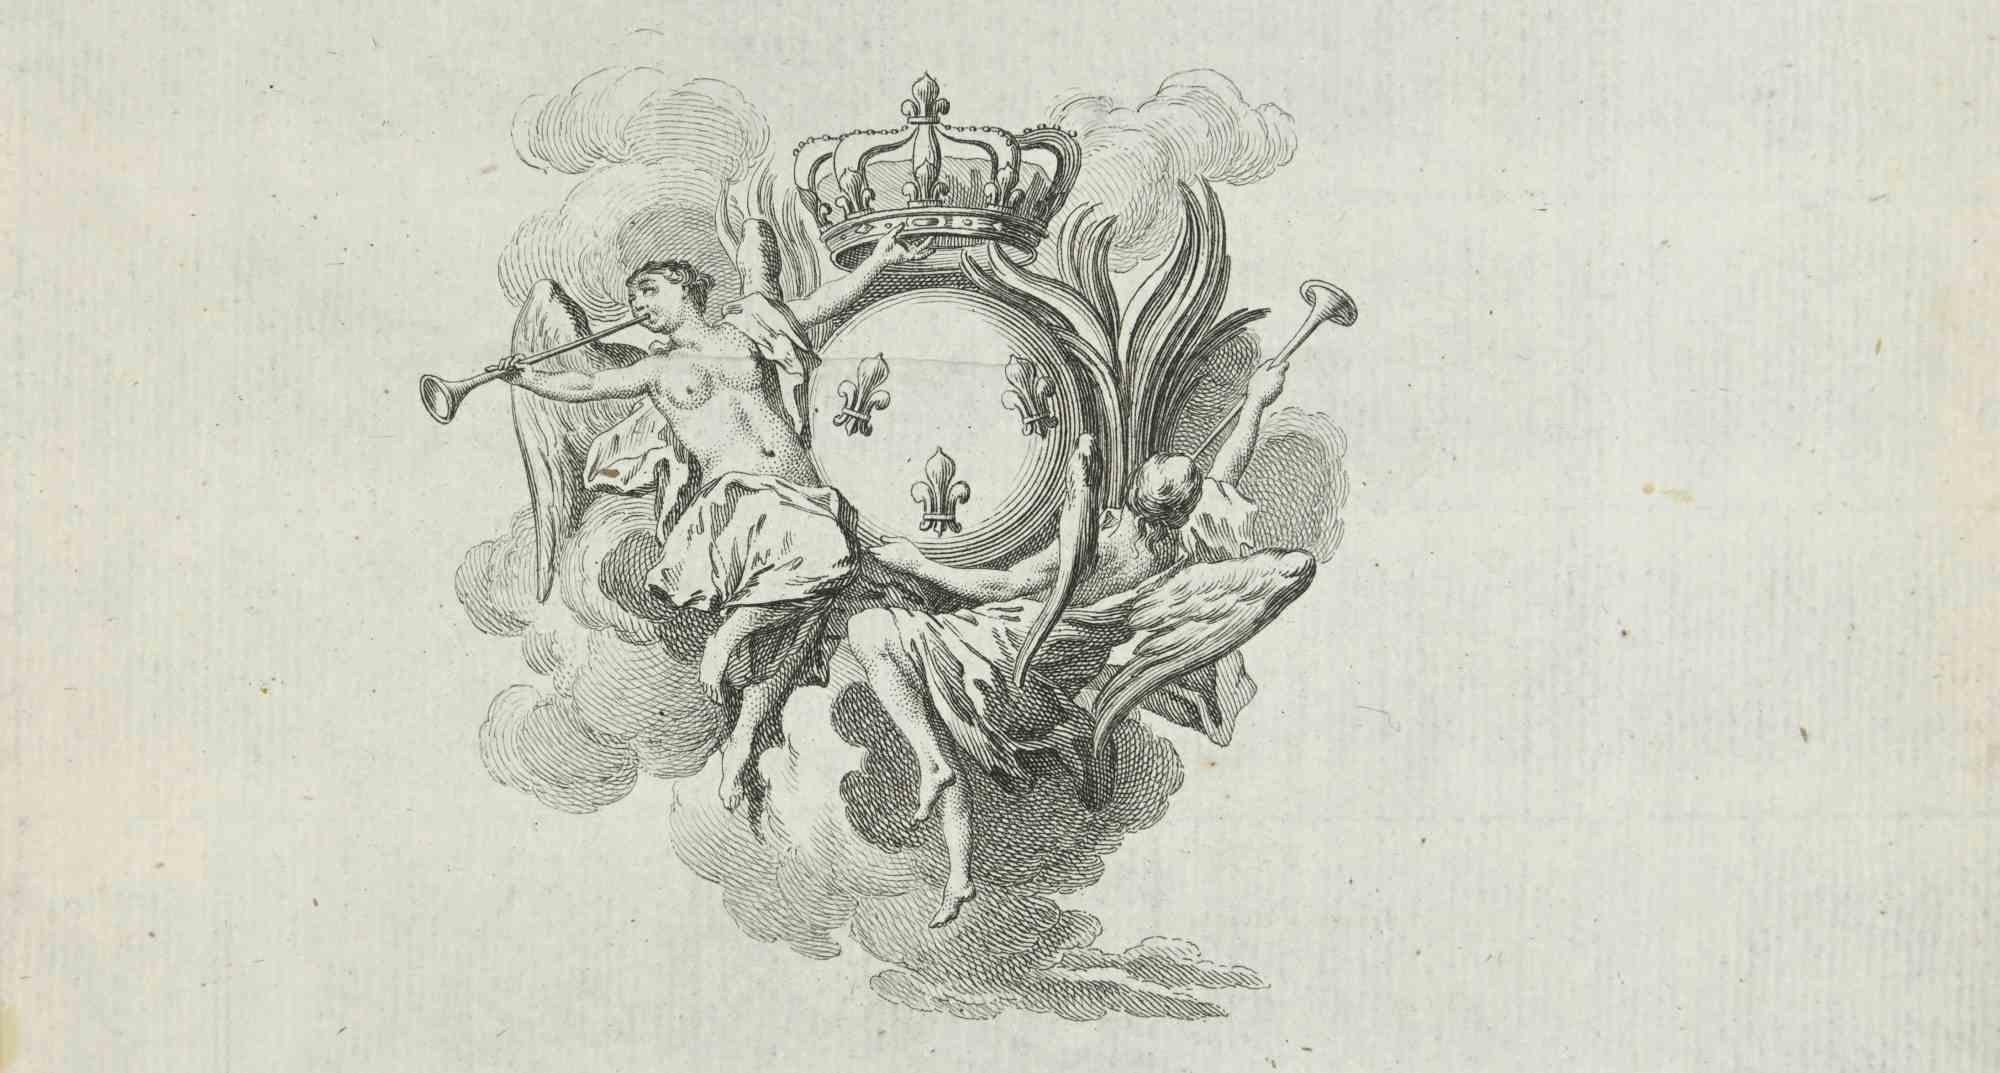 Komposition mit Engeln – Radierung von Louis Legrand – 1771